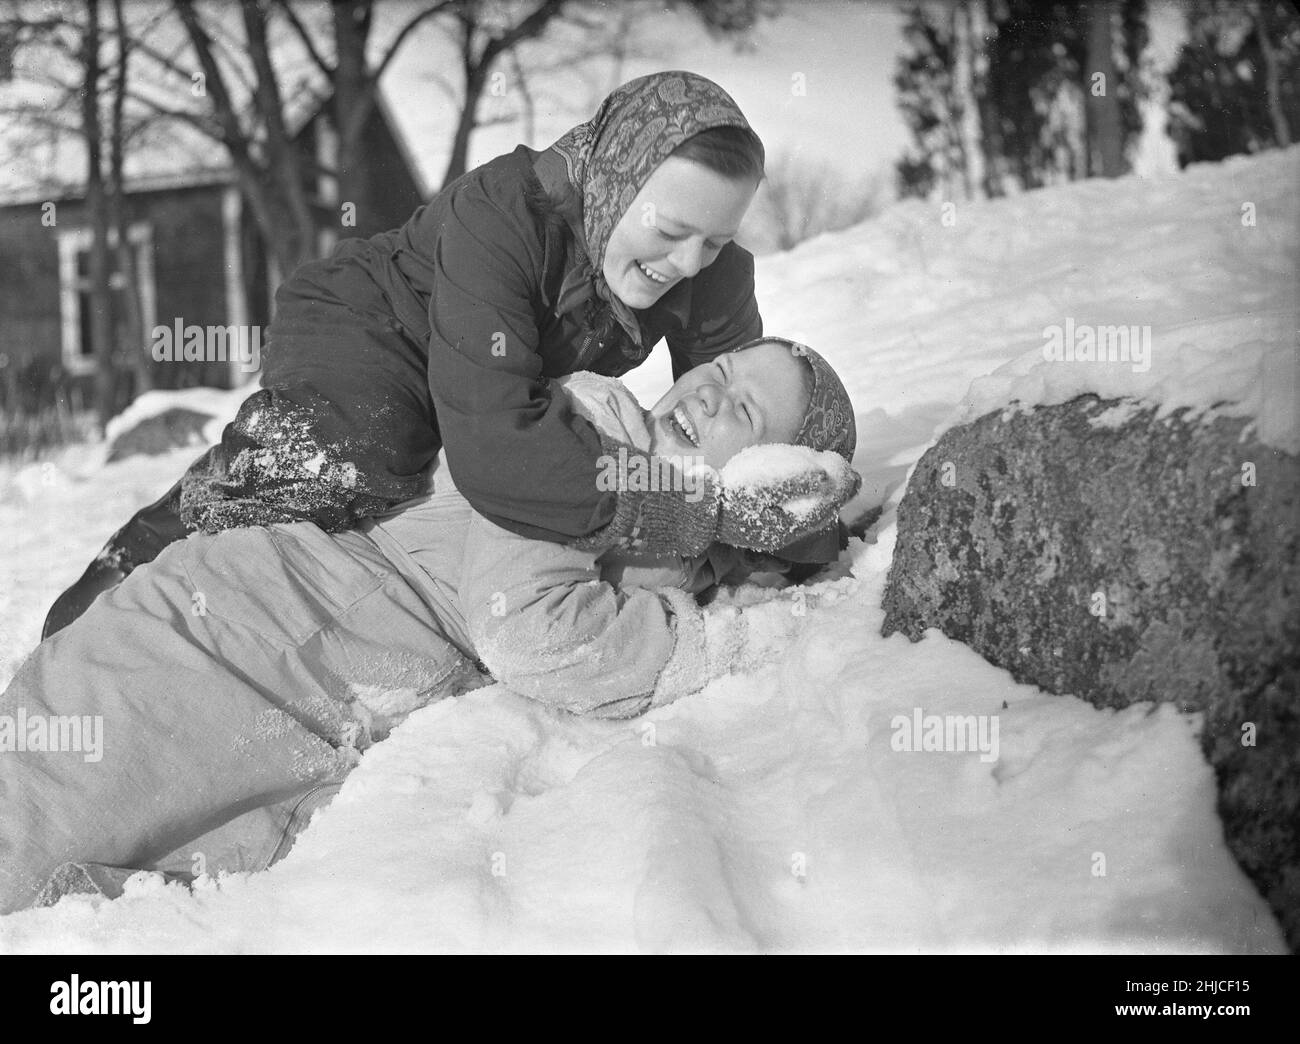 Hiver en 1940s.Les deux filles jouent dans la neige en riant.L'un au-dessus de l'autre mettant de la neige dans son visage.Ils travaillent dans une ferme en Suède pendant la Seconde Guerre mondiale et ont occupé le rôle de travailleurs masculins lorsqu'ils étaient dans l'armée suédoise et souvent placés à la frontière suédoise très loin.Rotebro Suède février 1940.Kristoffersson réf. 78-3 Banque D'Images